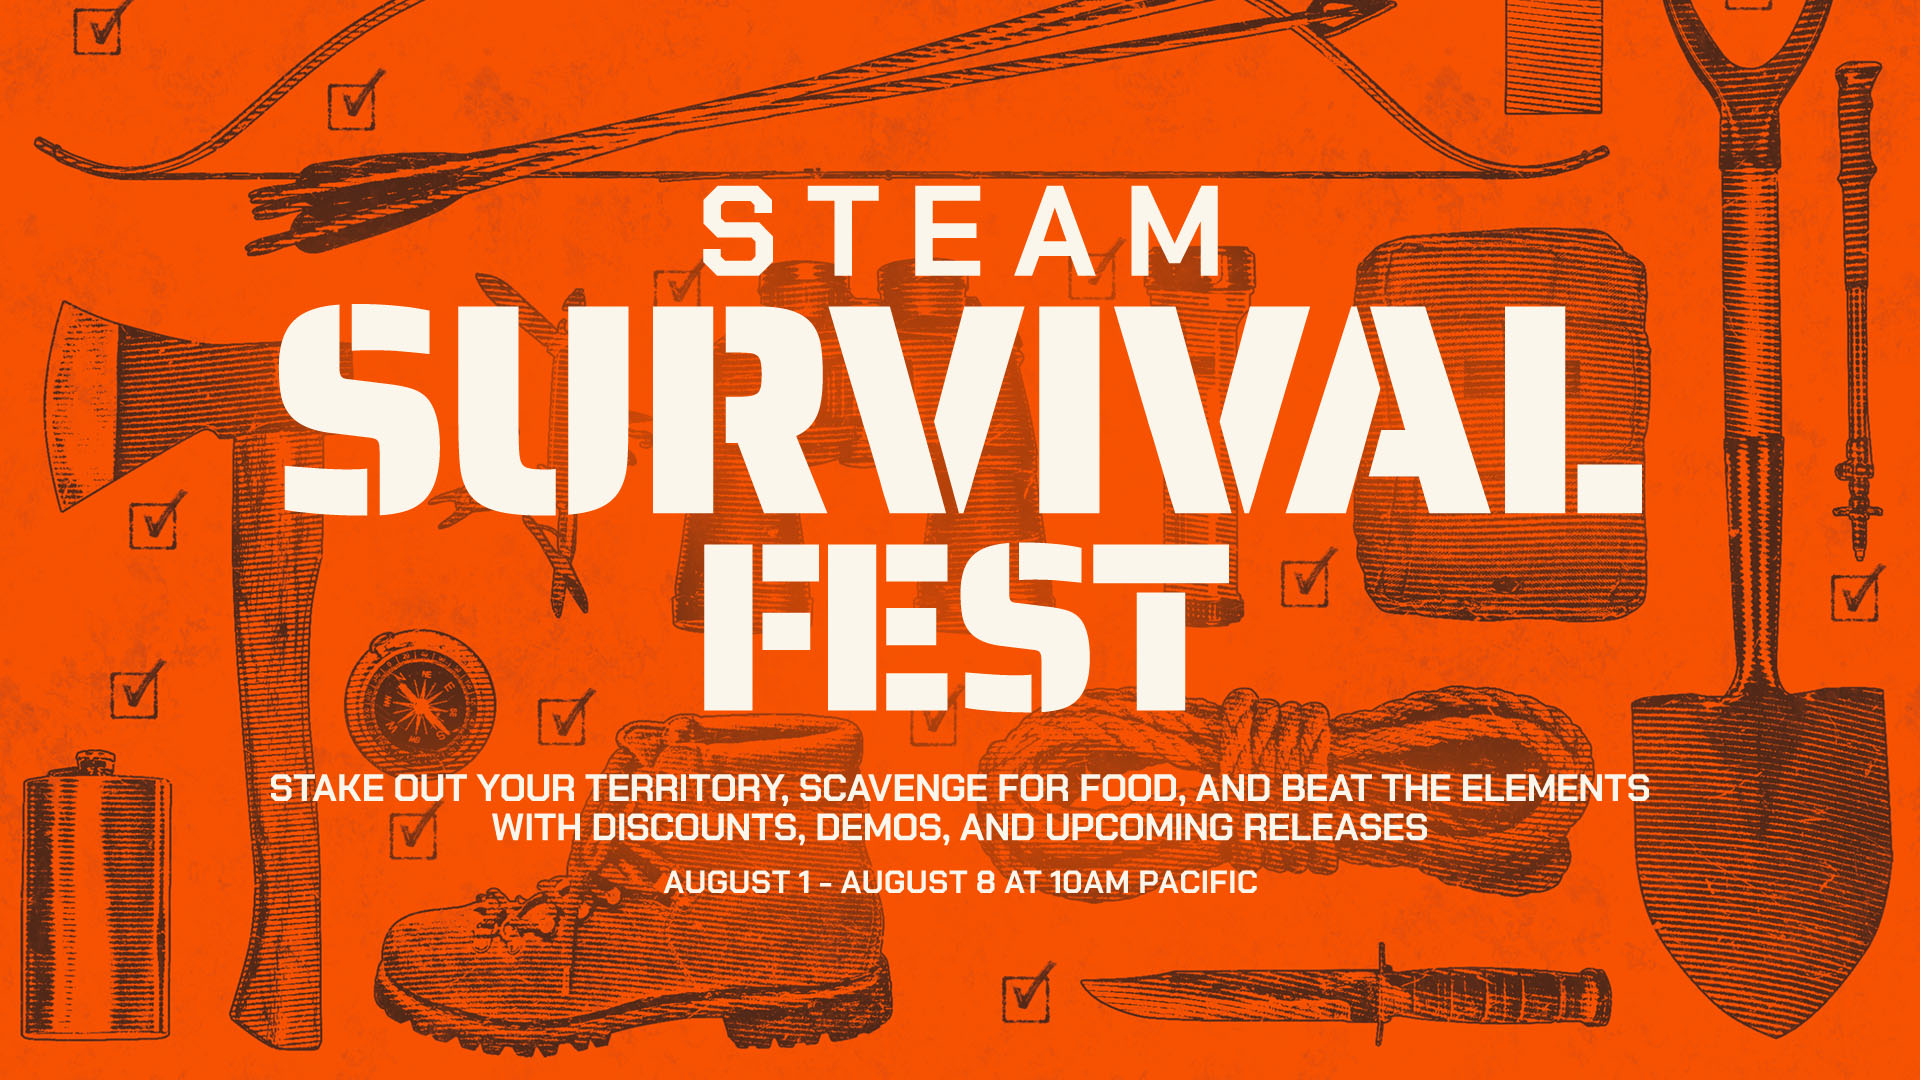 Steam Survival Festival rozpoczyna się 1 sierpnia